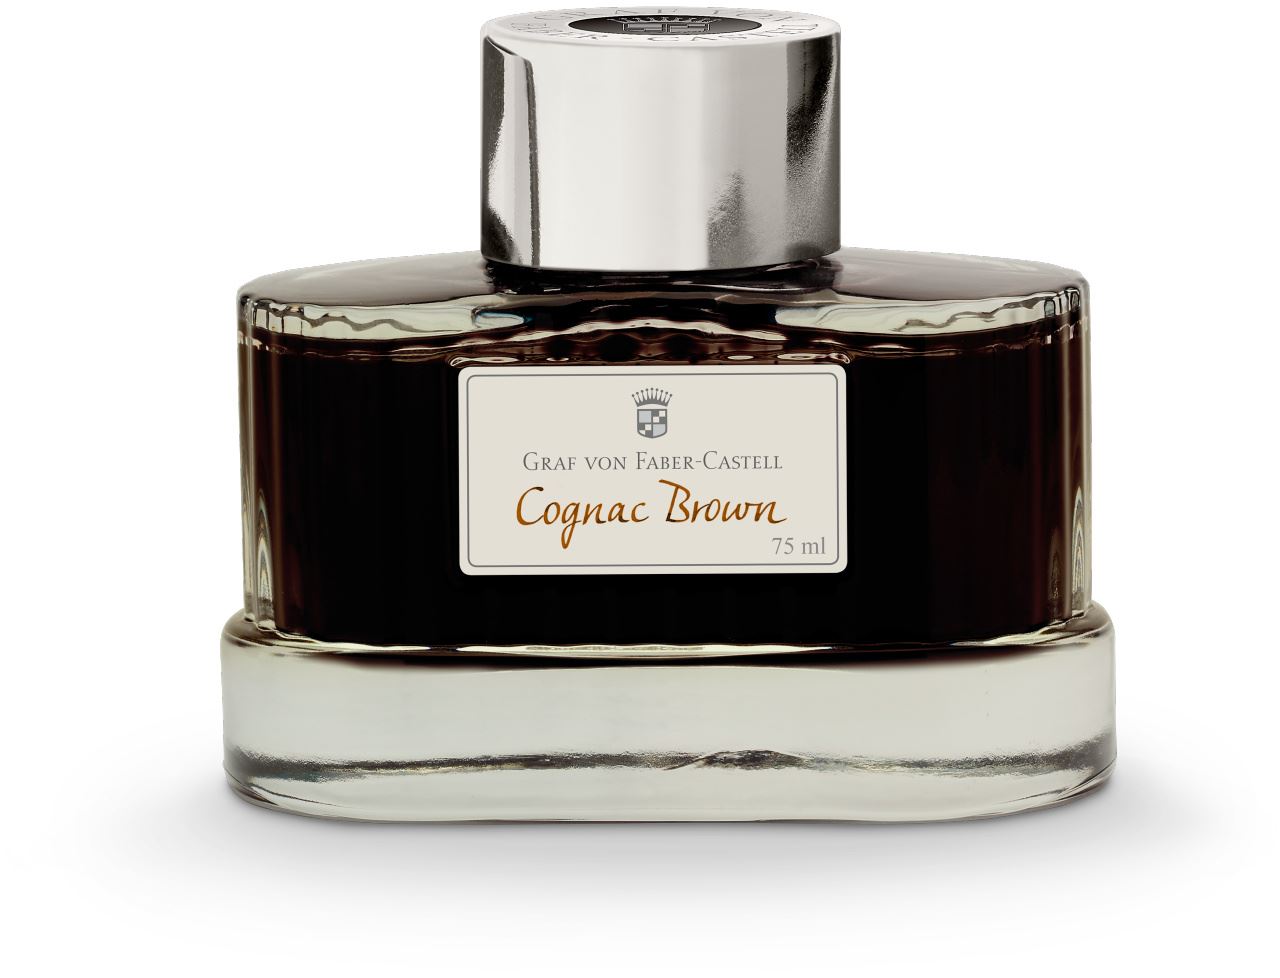 Graf-von-Faber-Castell - Frasco de tinta cognac brown 75ml